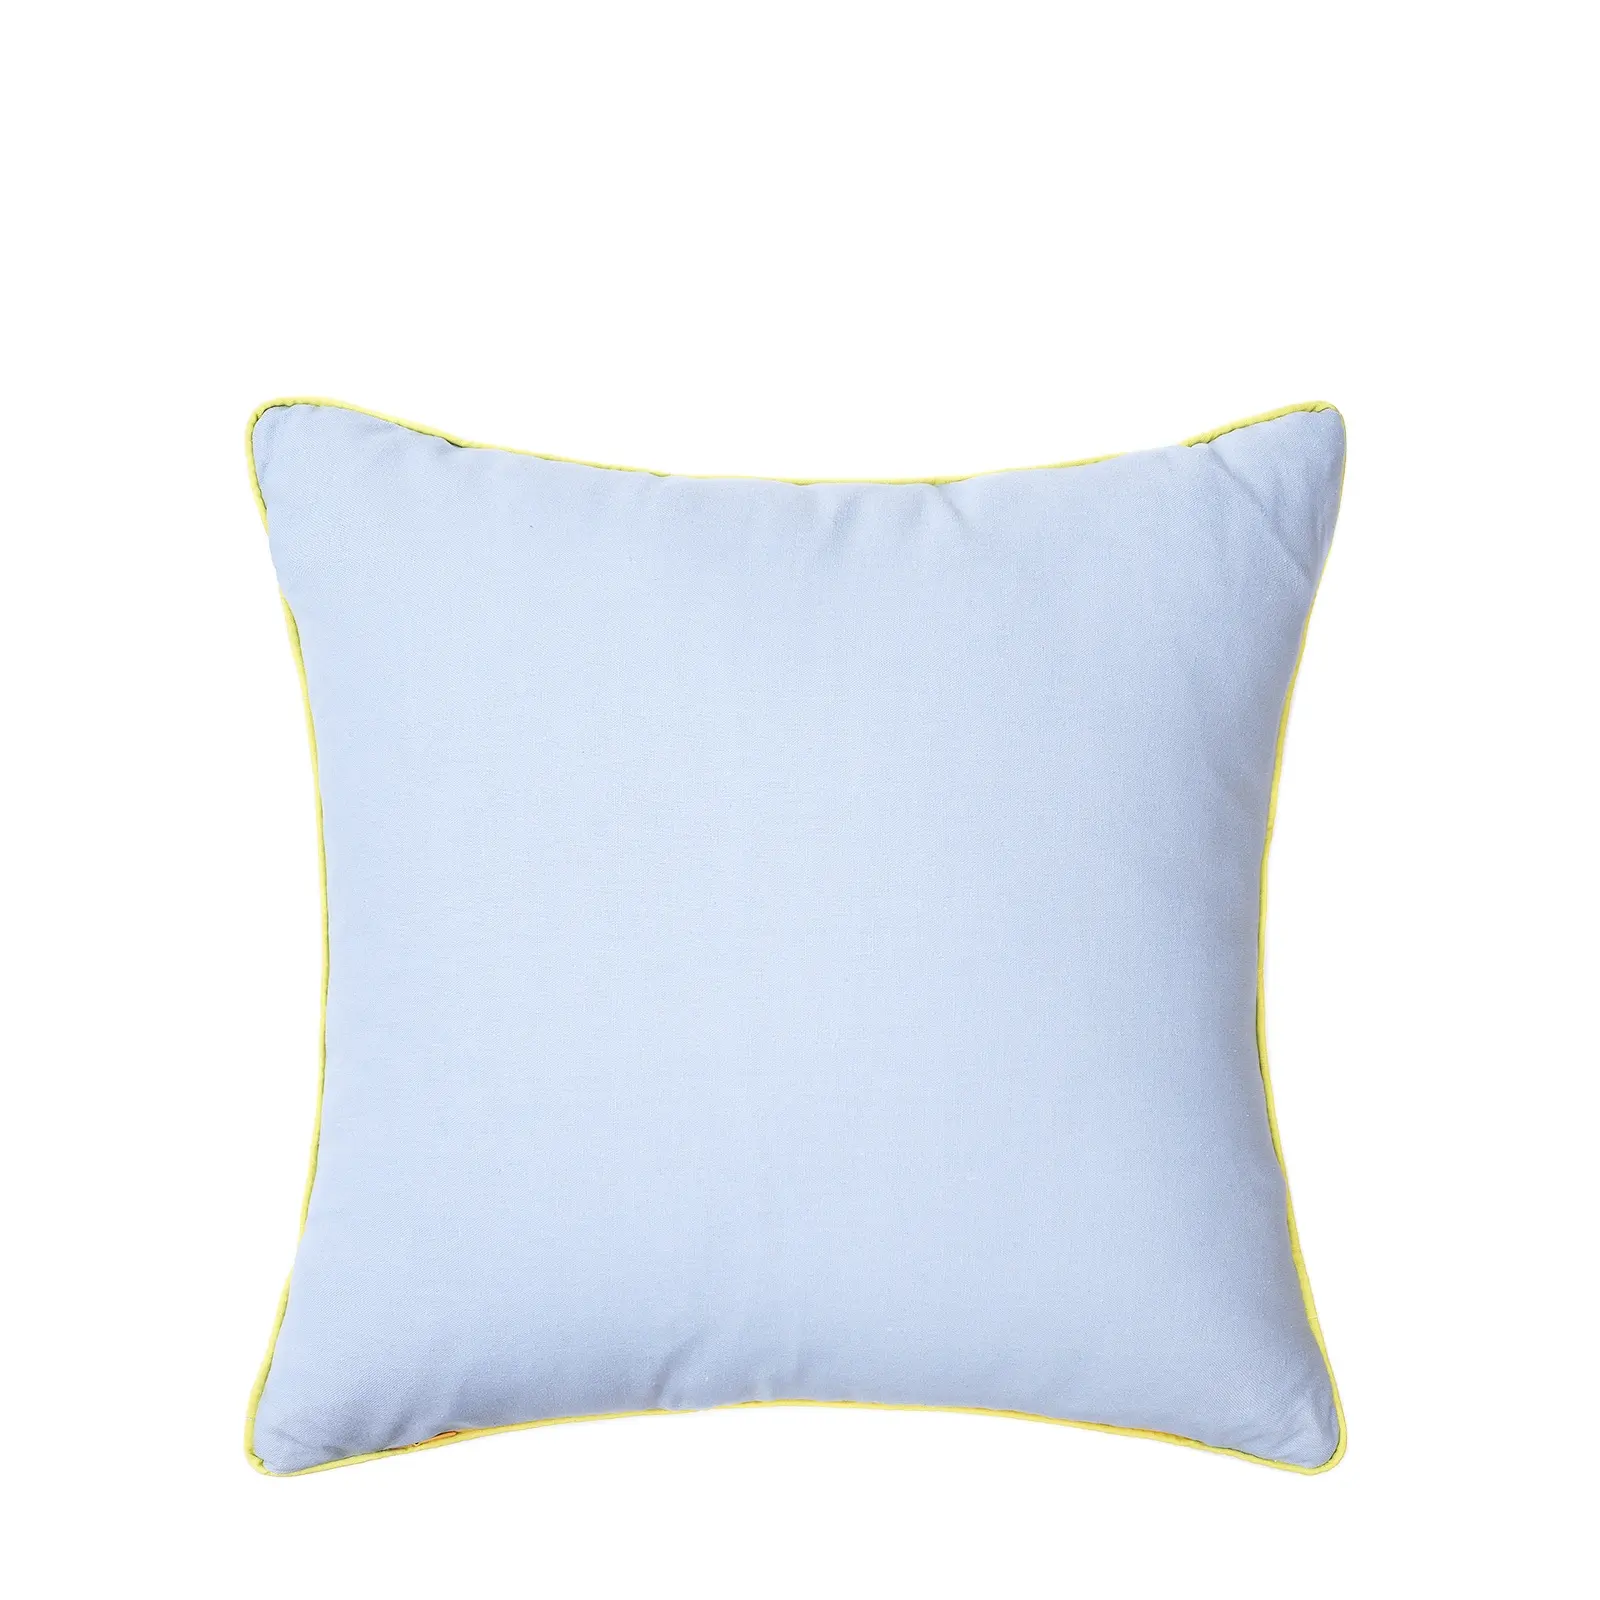 Décoration de la maison housse d'oreiller multicolore linge canapé taies d'oreiller bleu taie d'oreiller uni avec passepoil